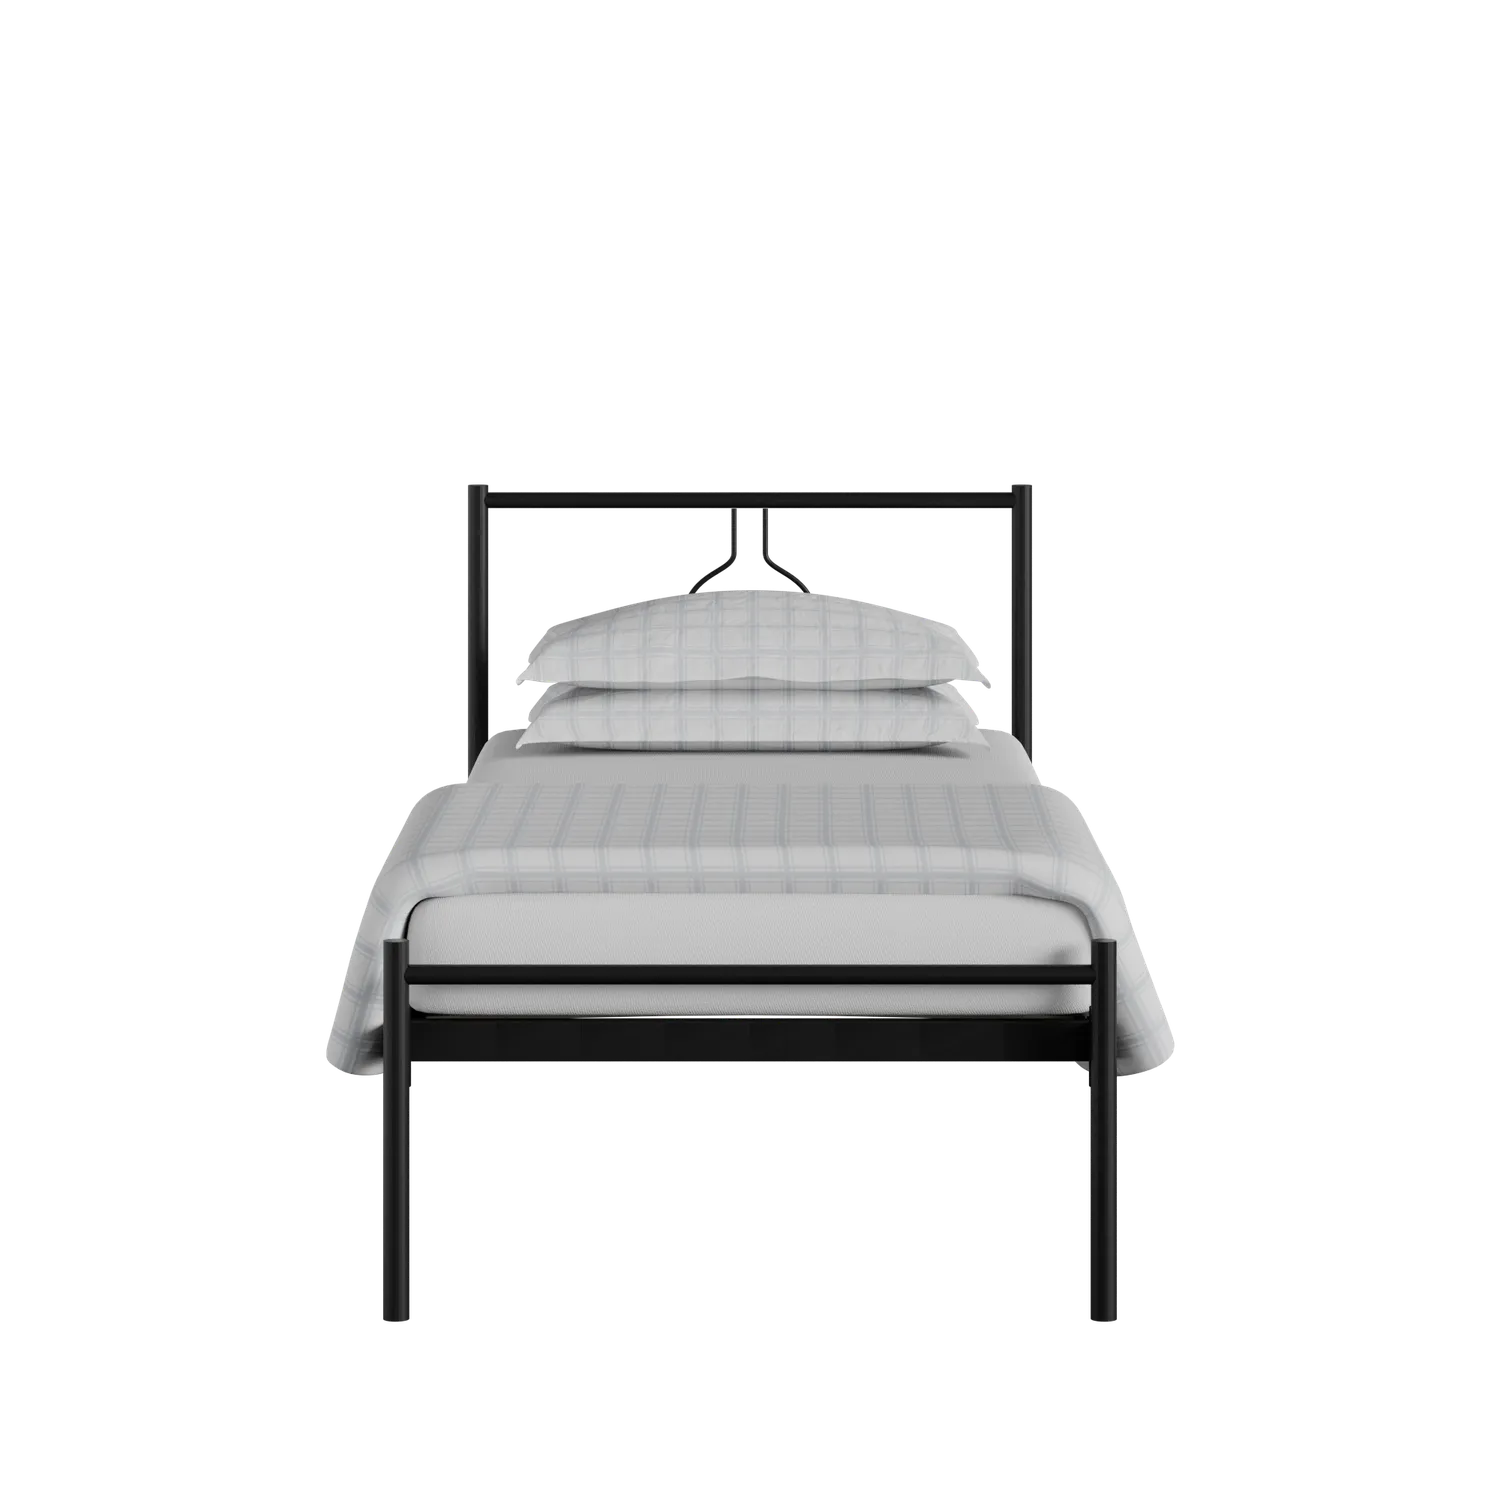 Meiji iron/metal single bed in black